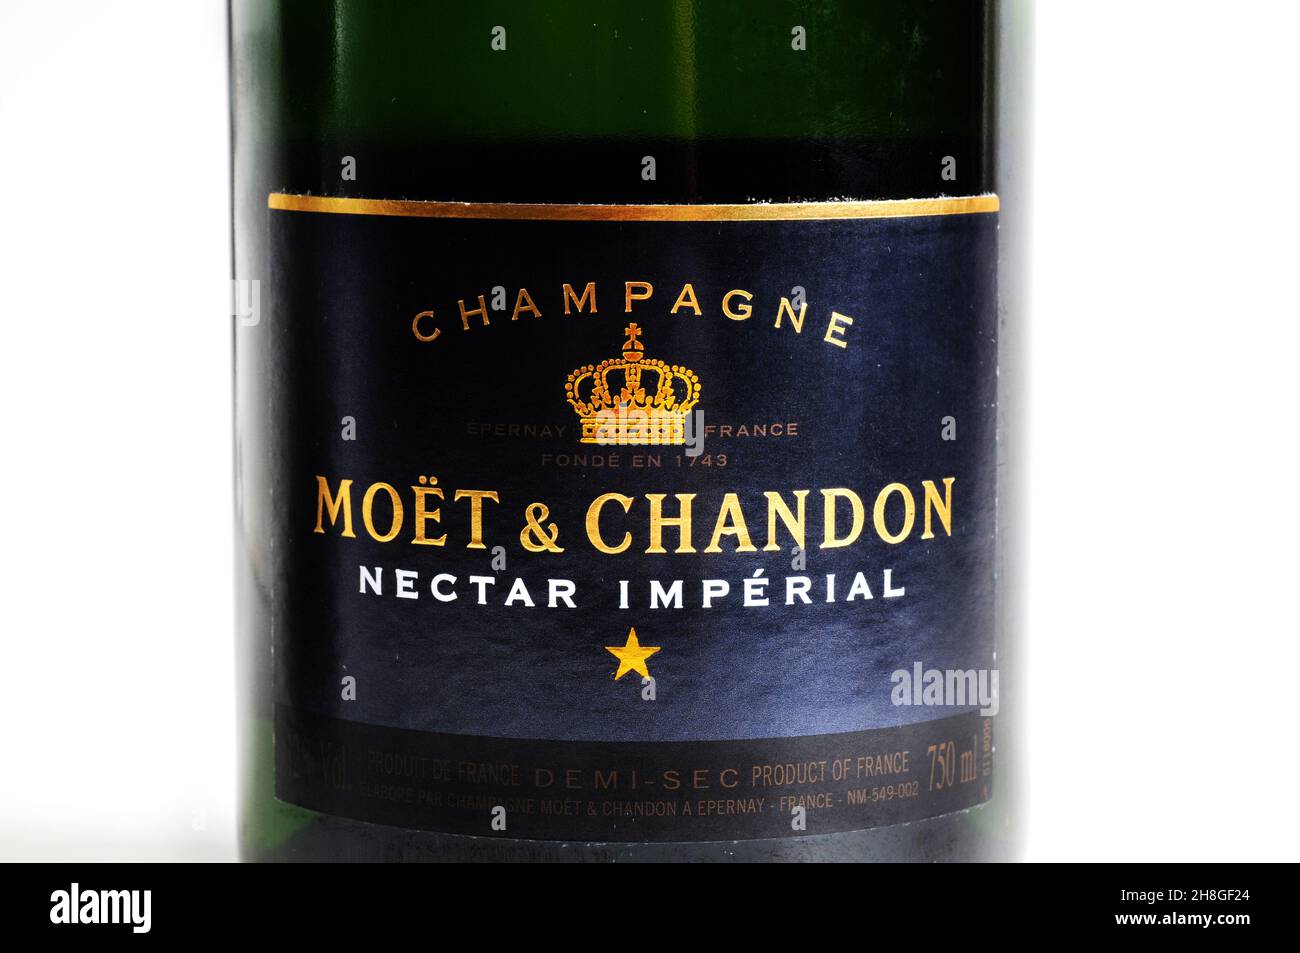 Bottiglia di champagne Moet and Chandon Brut Nectar Imperial, etichetta vino frizzante Foto Stock